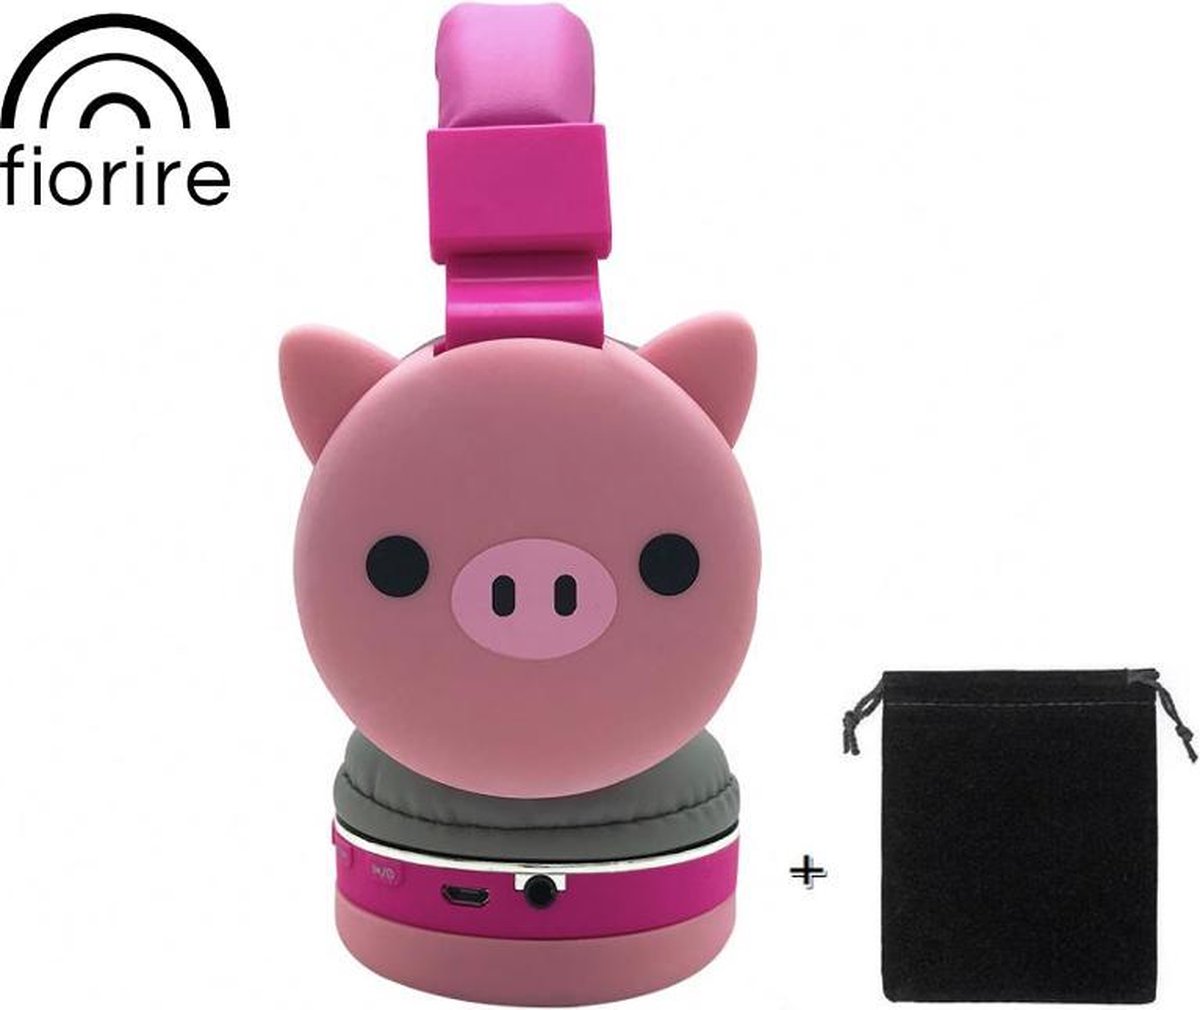 FIORIRE - Draadloze bluetooth kinderkoptelefoon - Koptelefoon met microfoon - Over-ear - Met volumebegrenzer 85 db - Roze